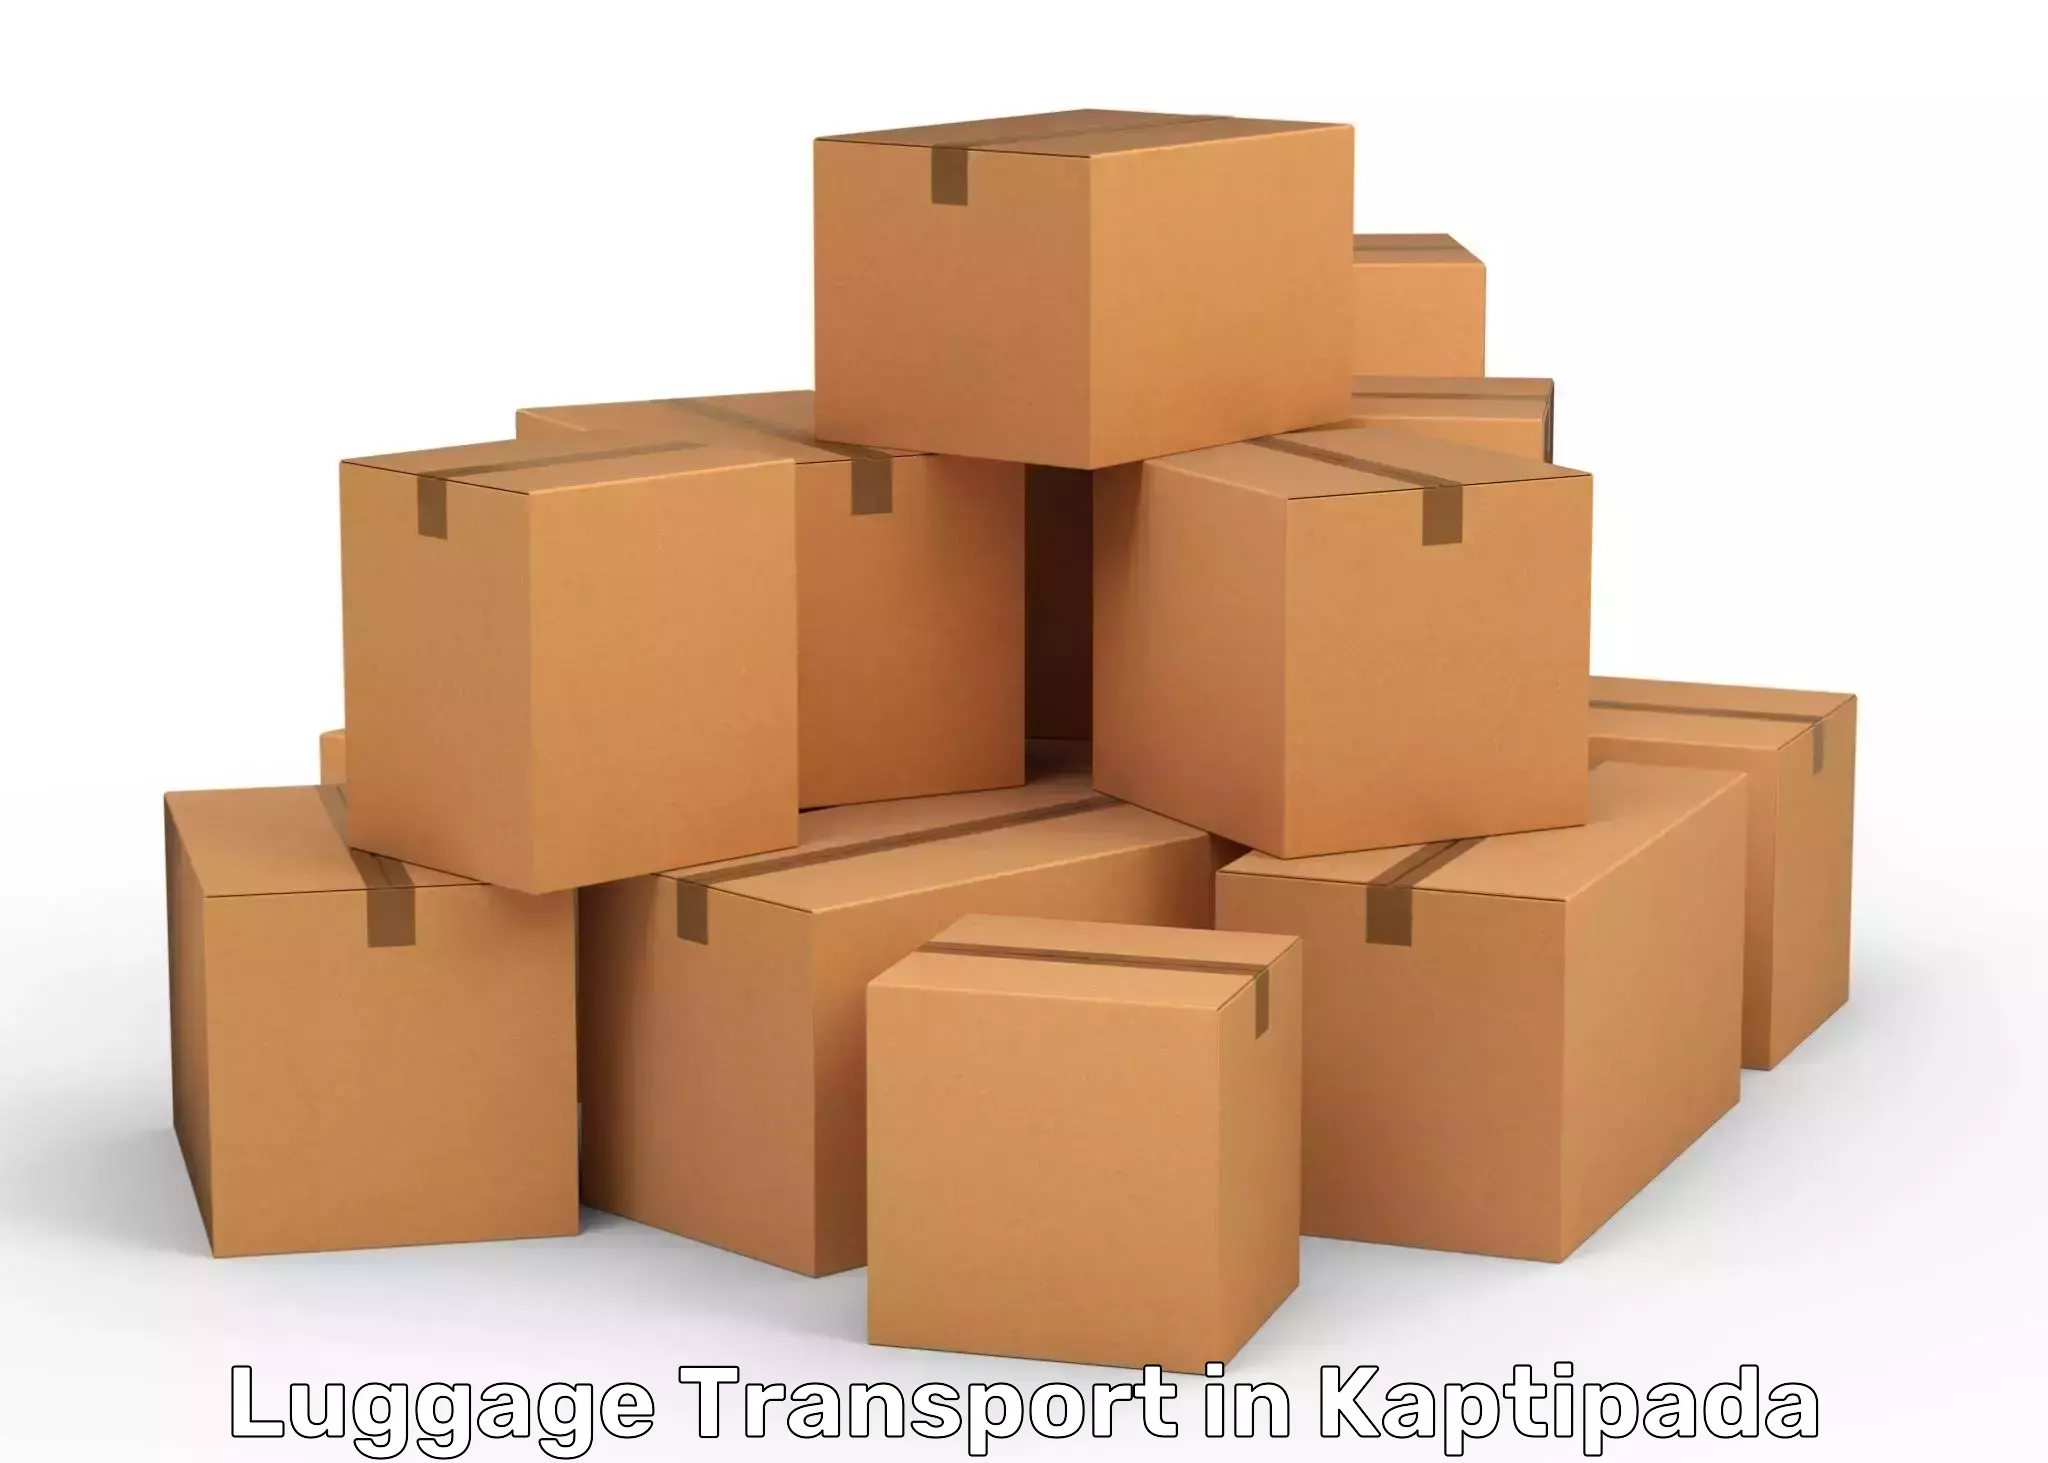 Luggage shipping estimate in Kaptipada